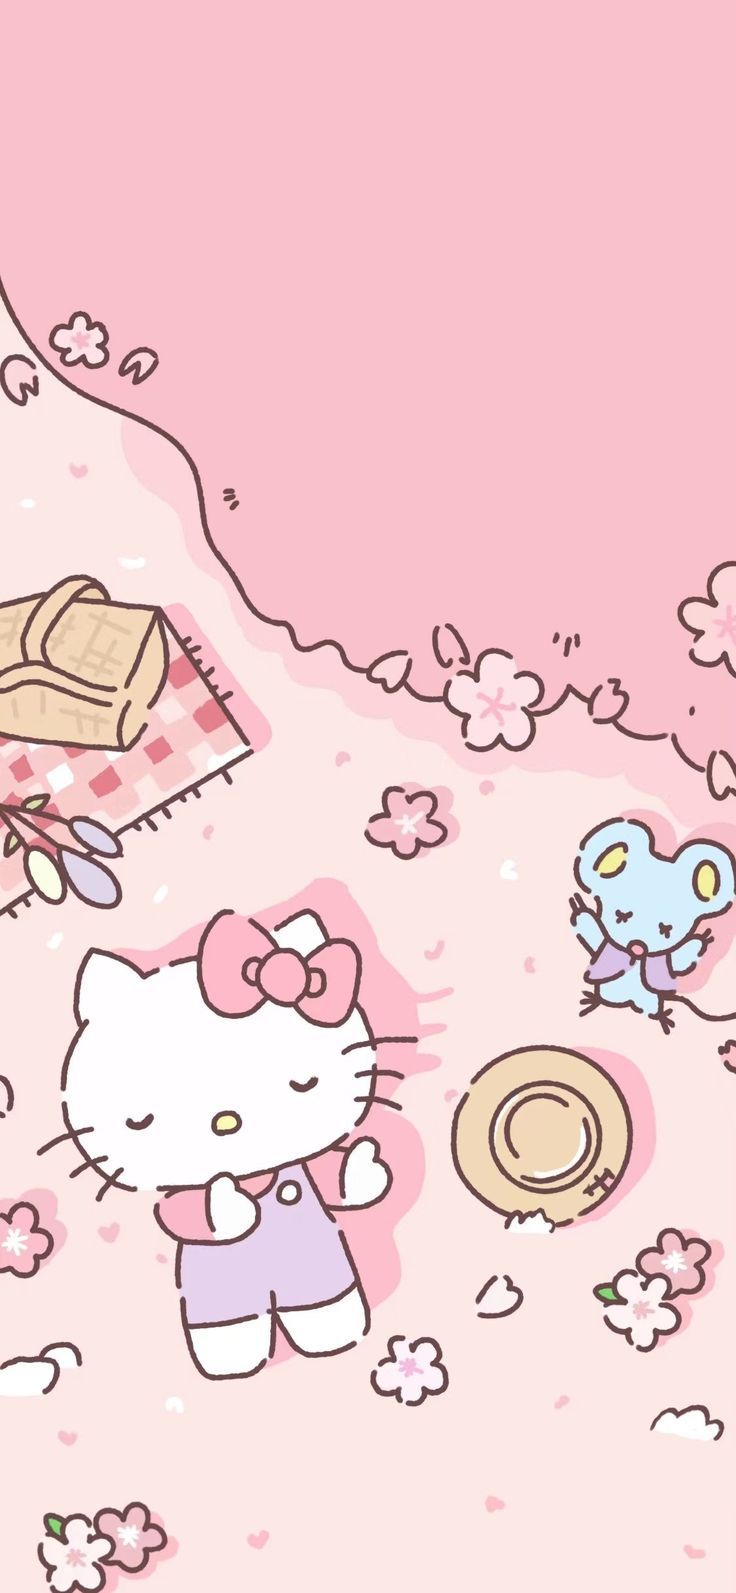 Hello Kitty. Walpaper hello kitty, Hello kitty wallpaper, Hello kitty iphone wallpaper. 헬로키티 배경화면, 헬로키티, 산리오 벽지